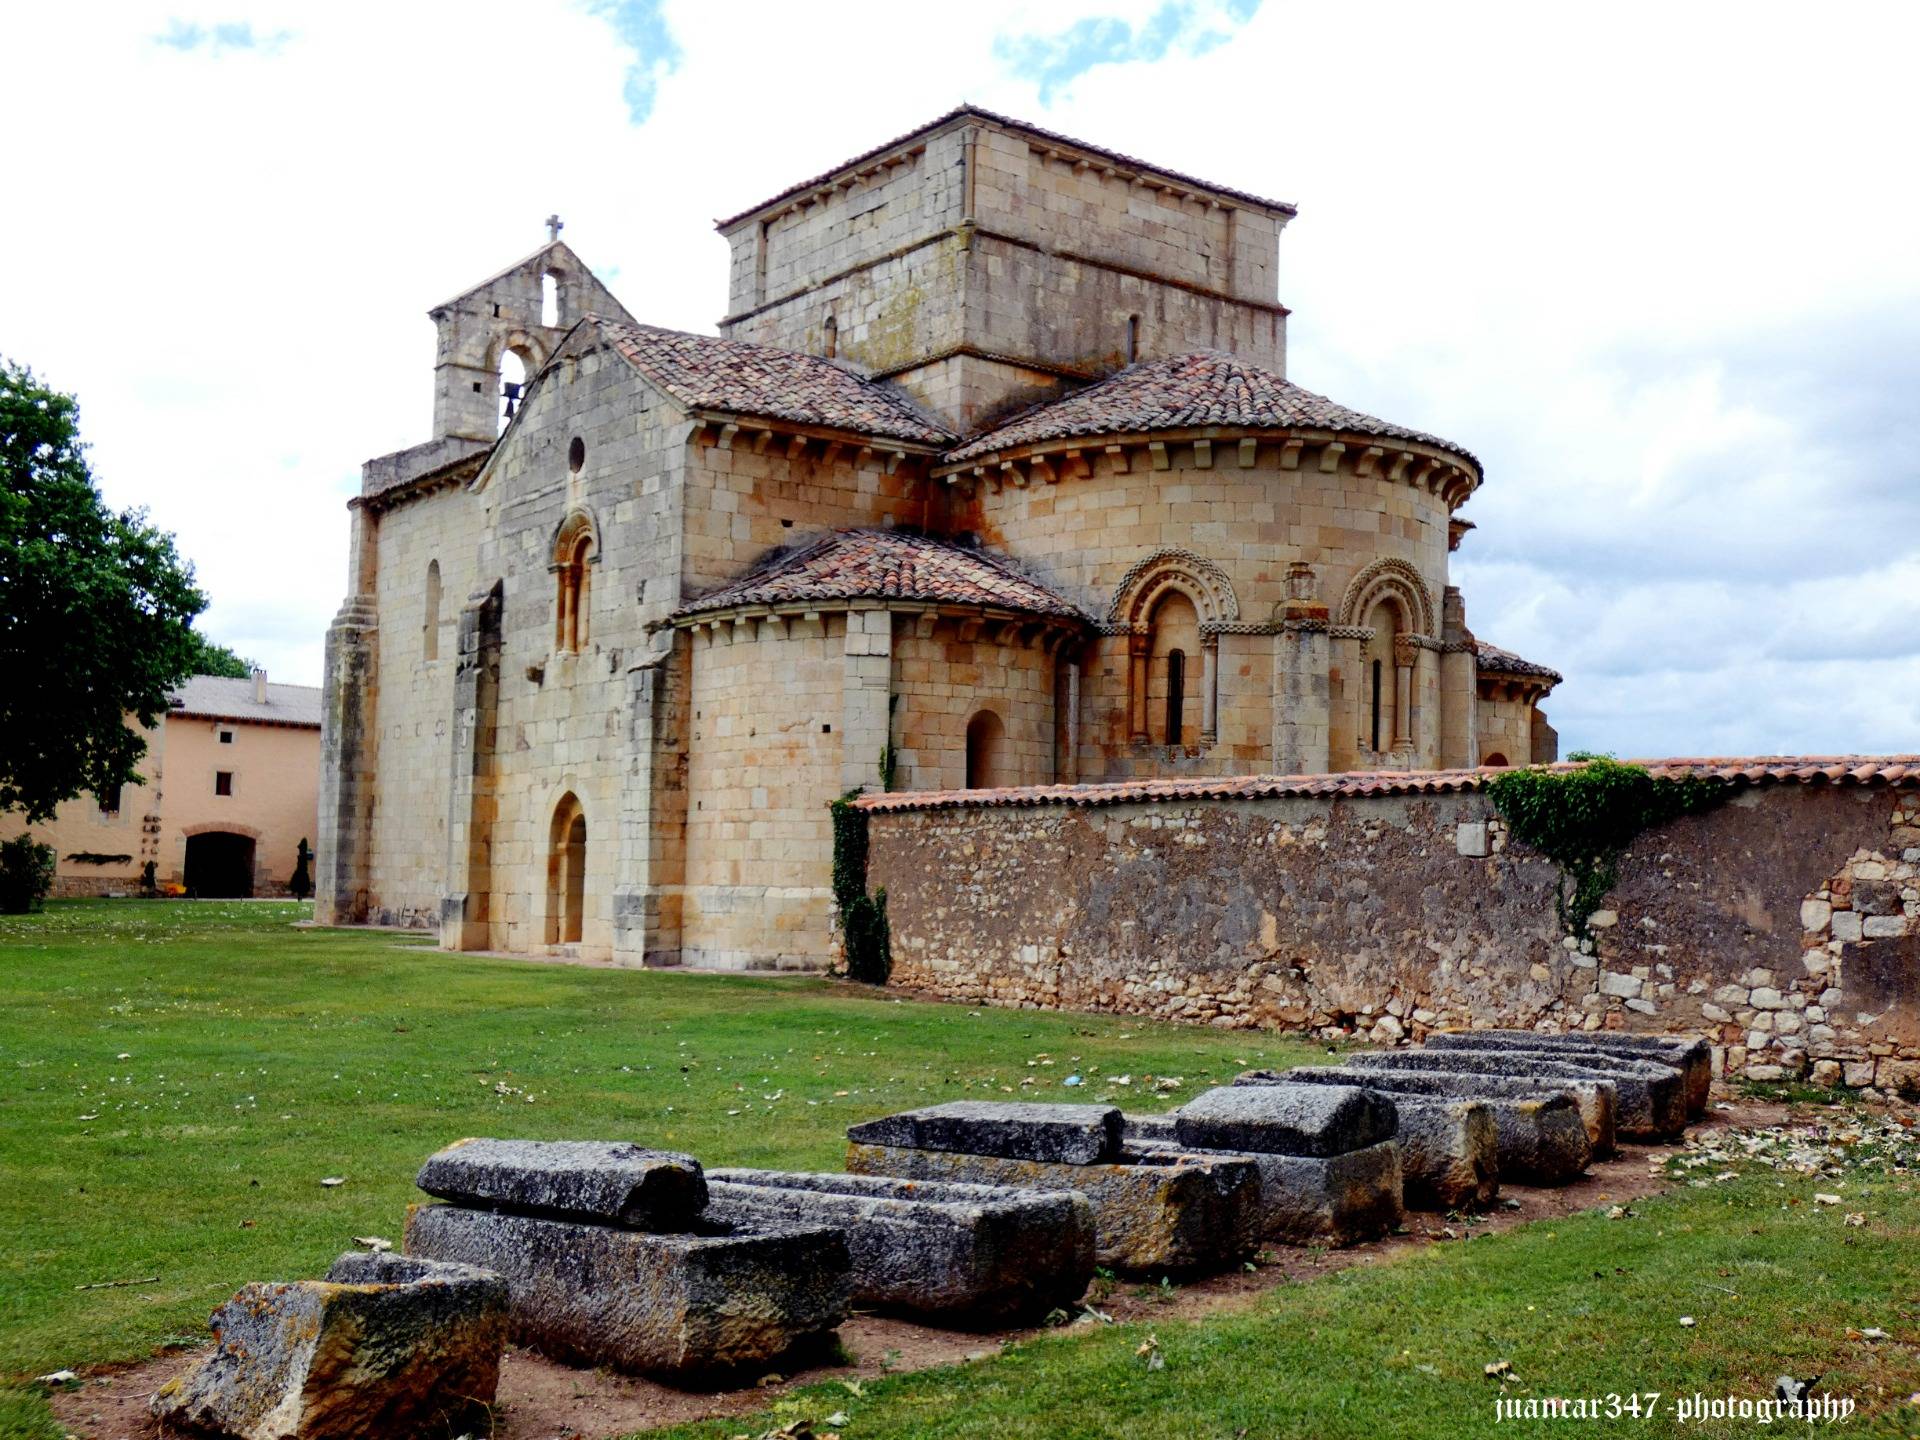 Paseos por el Románico Palentino: el monasterio de Santa Eufemia de Cozuelos